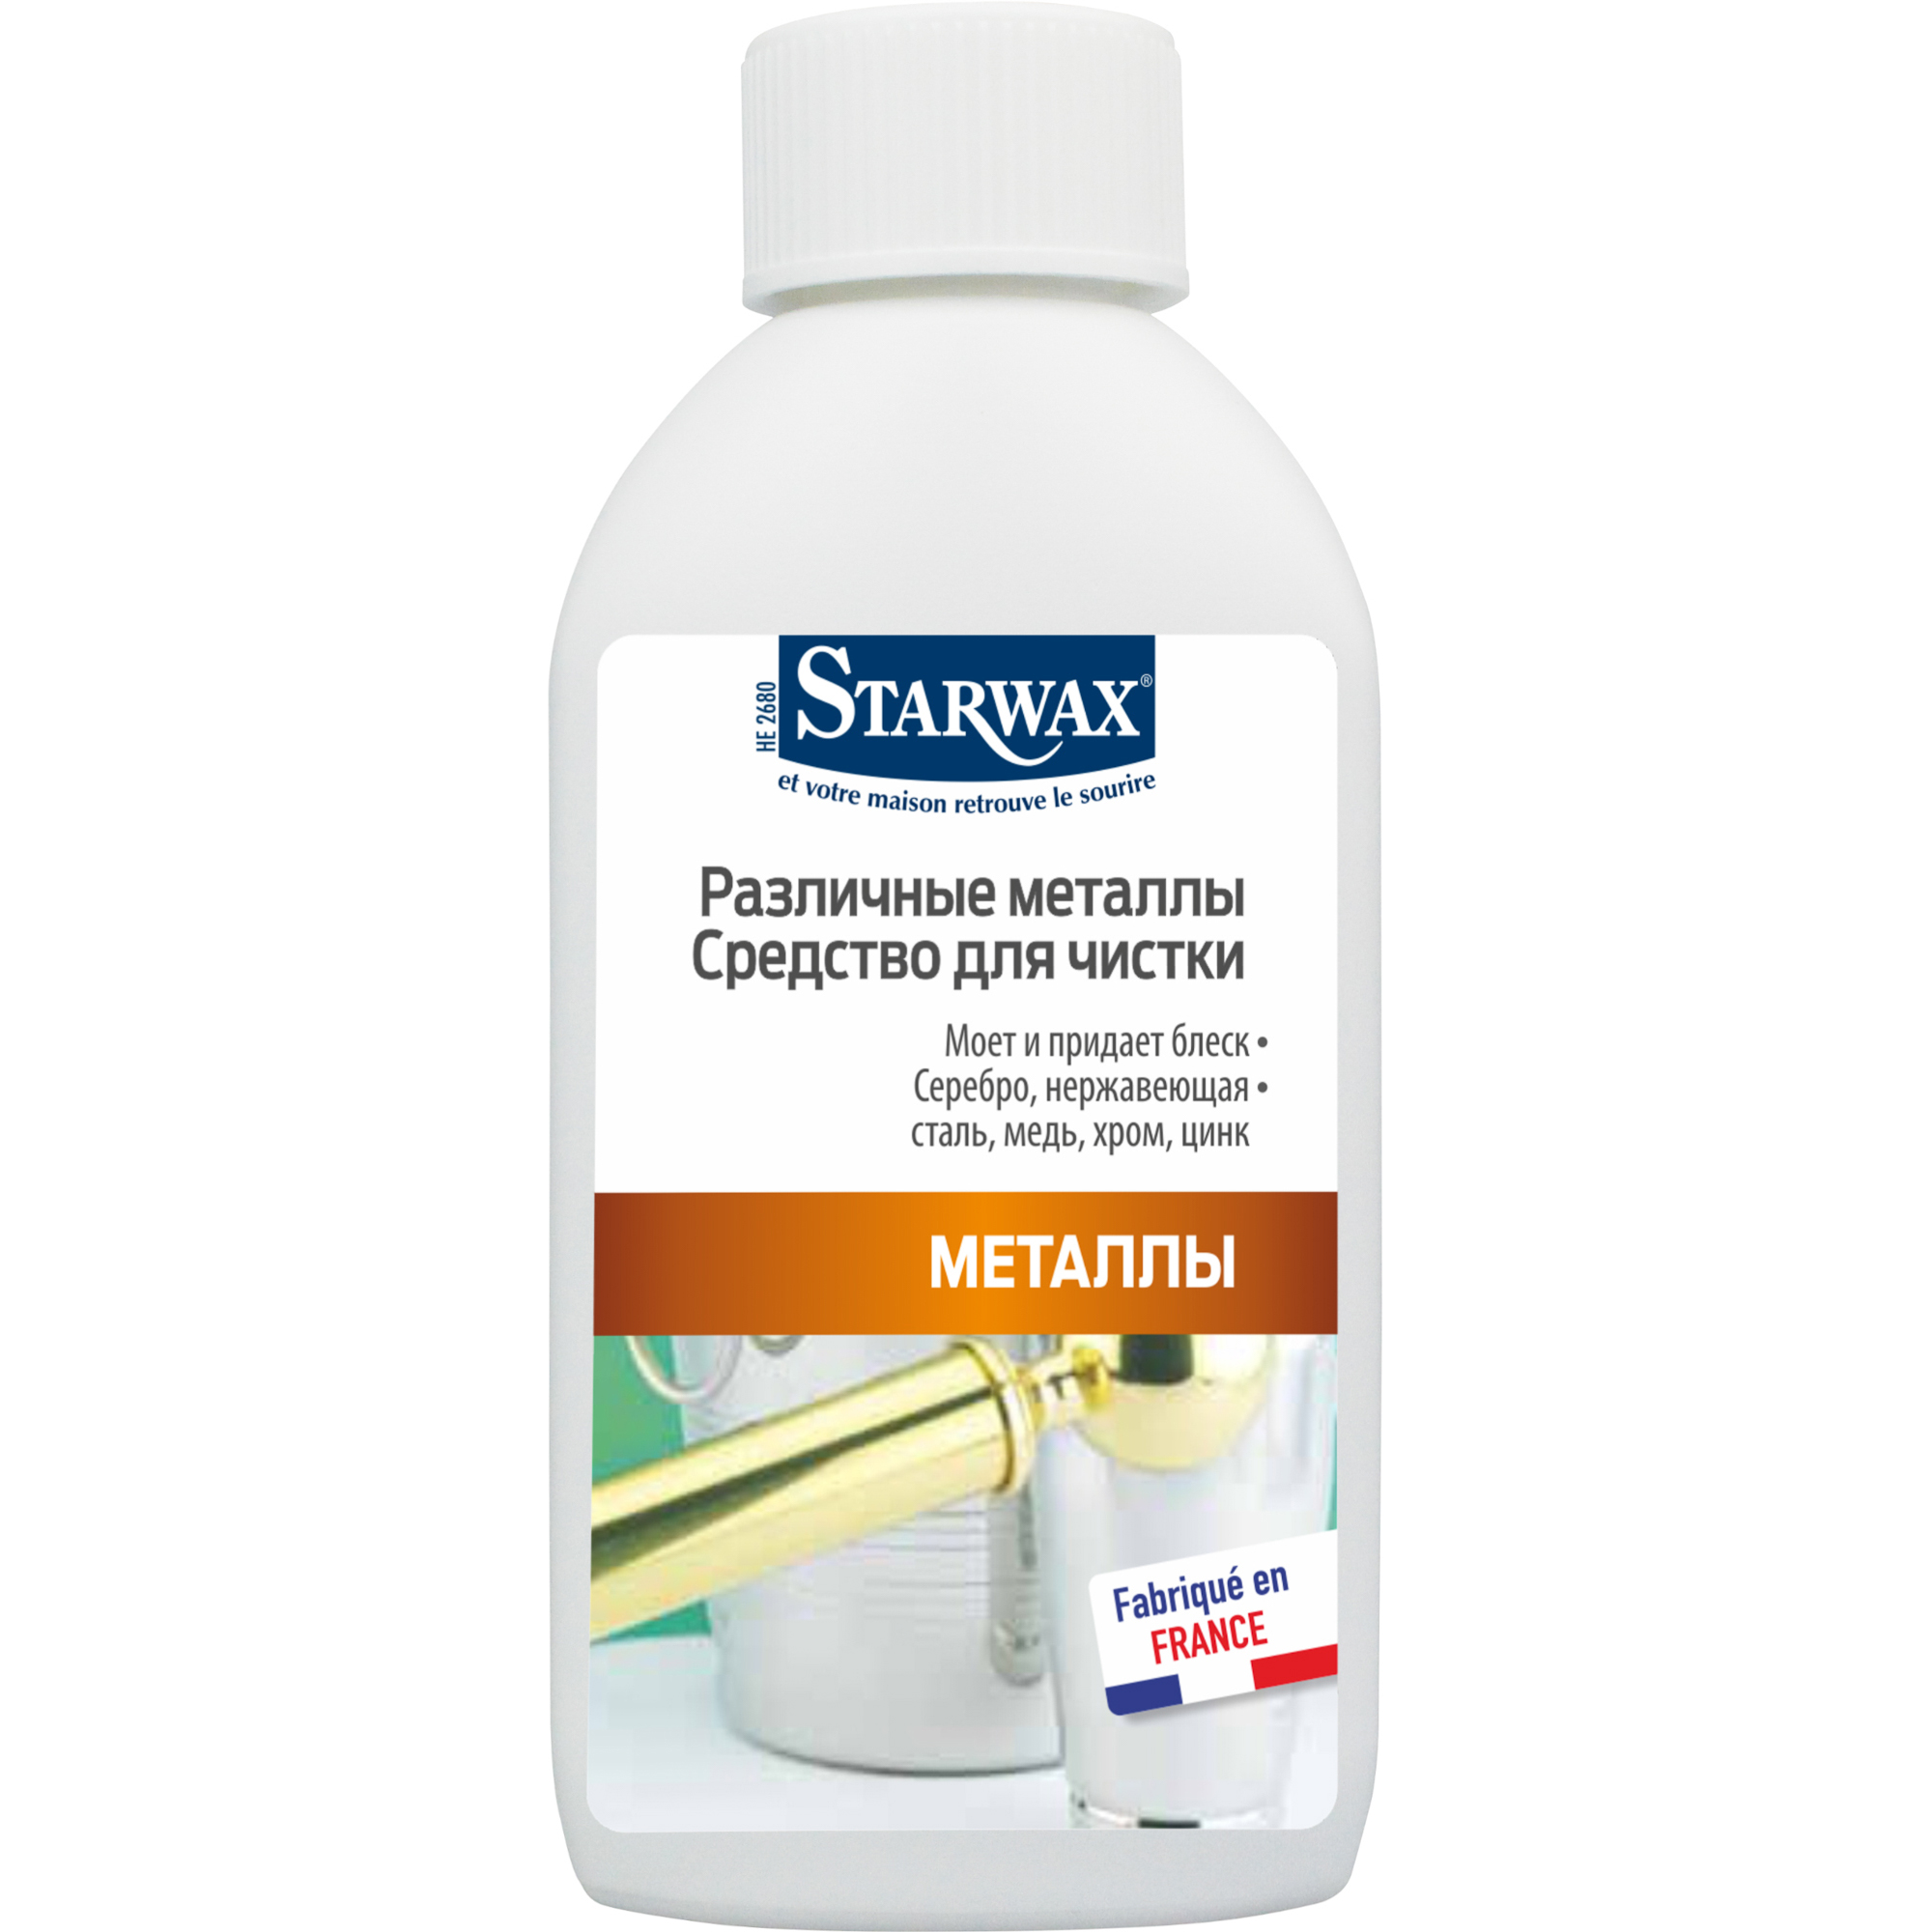 Starwax средство для чистки металлов